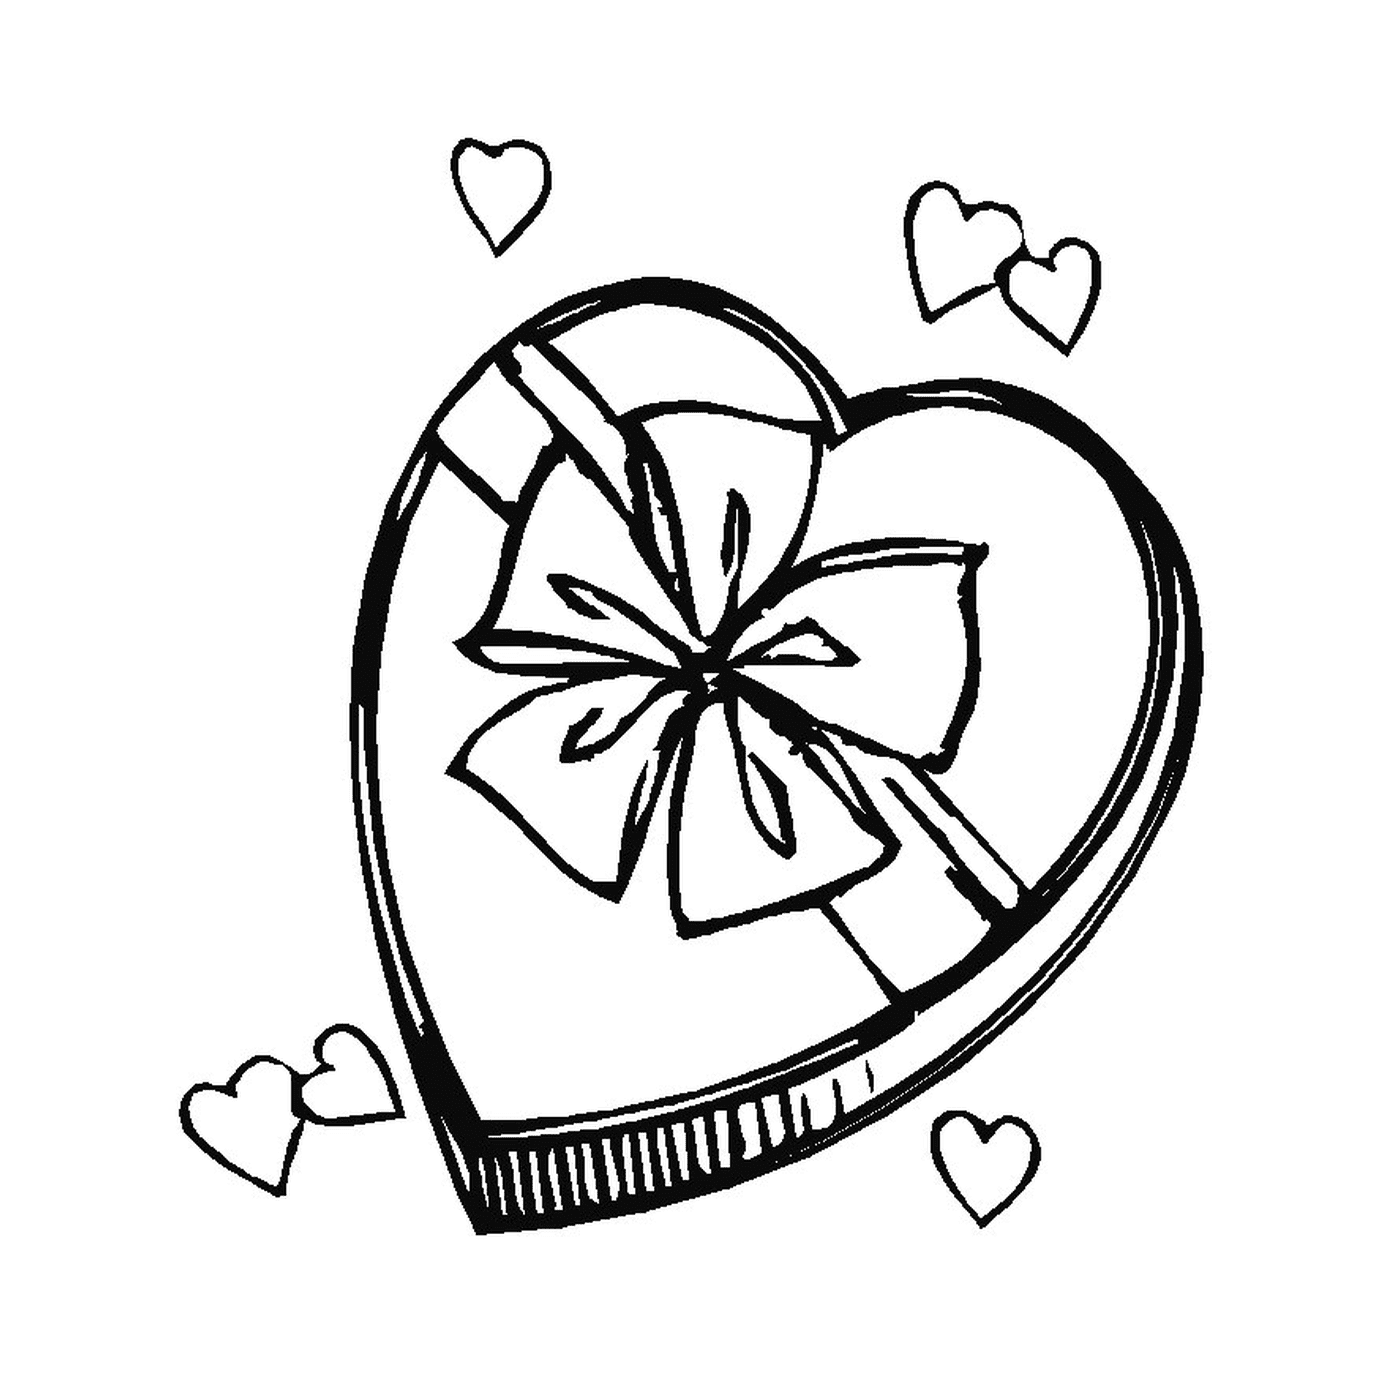   Une boîte en forme de cœur ouverte avec un nœud dessus 